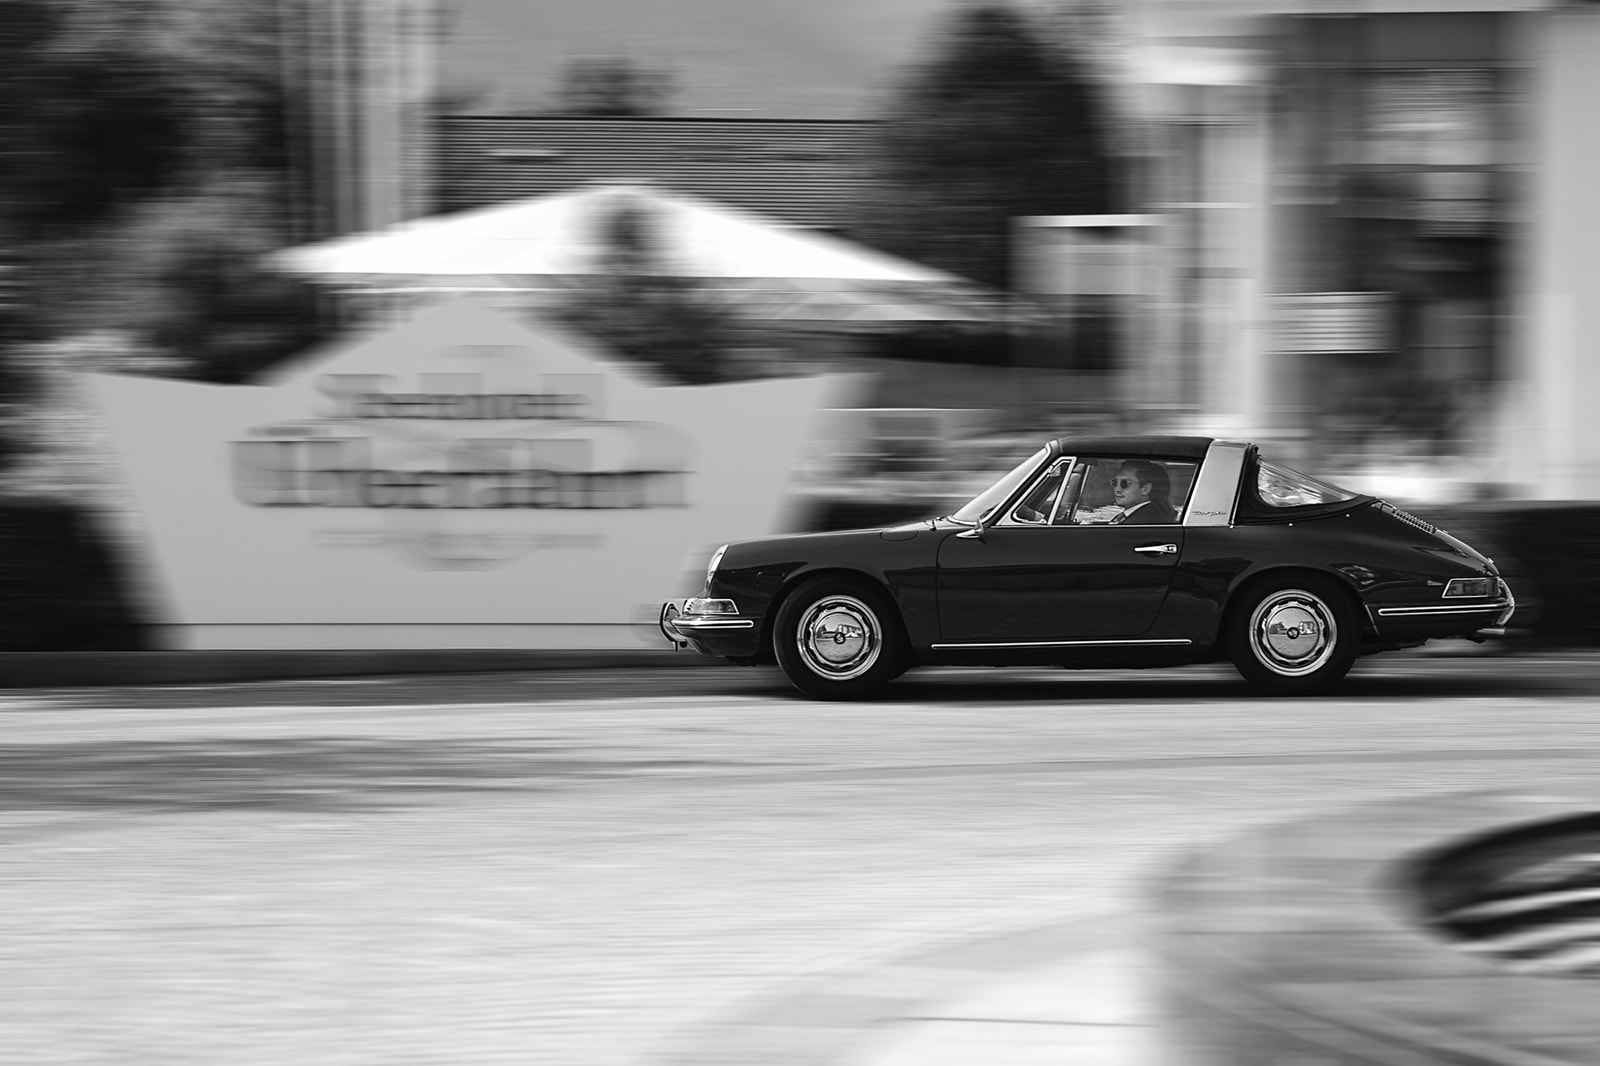 Hochzeitsauto mit Brautpaar vor dem Seehotel Überfahrt am Tegernsee. Wunderschöner alter Porsche Targa.